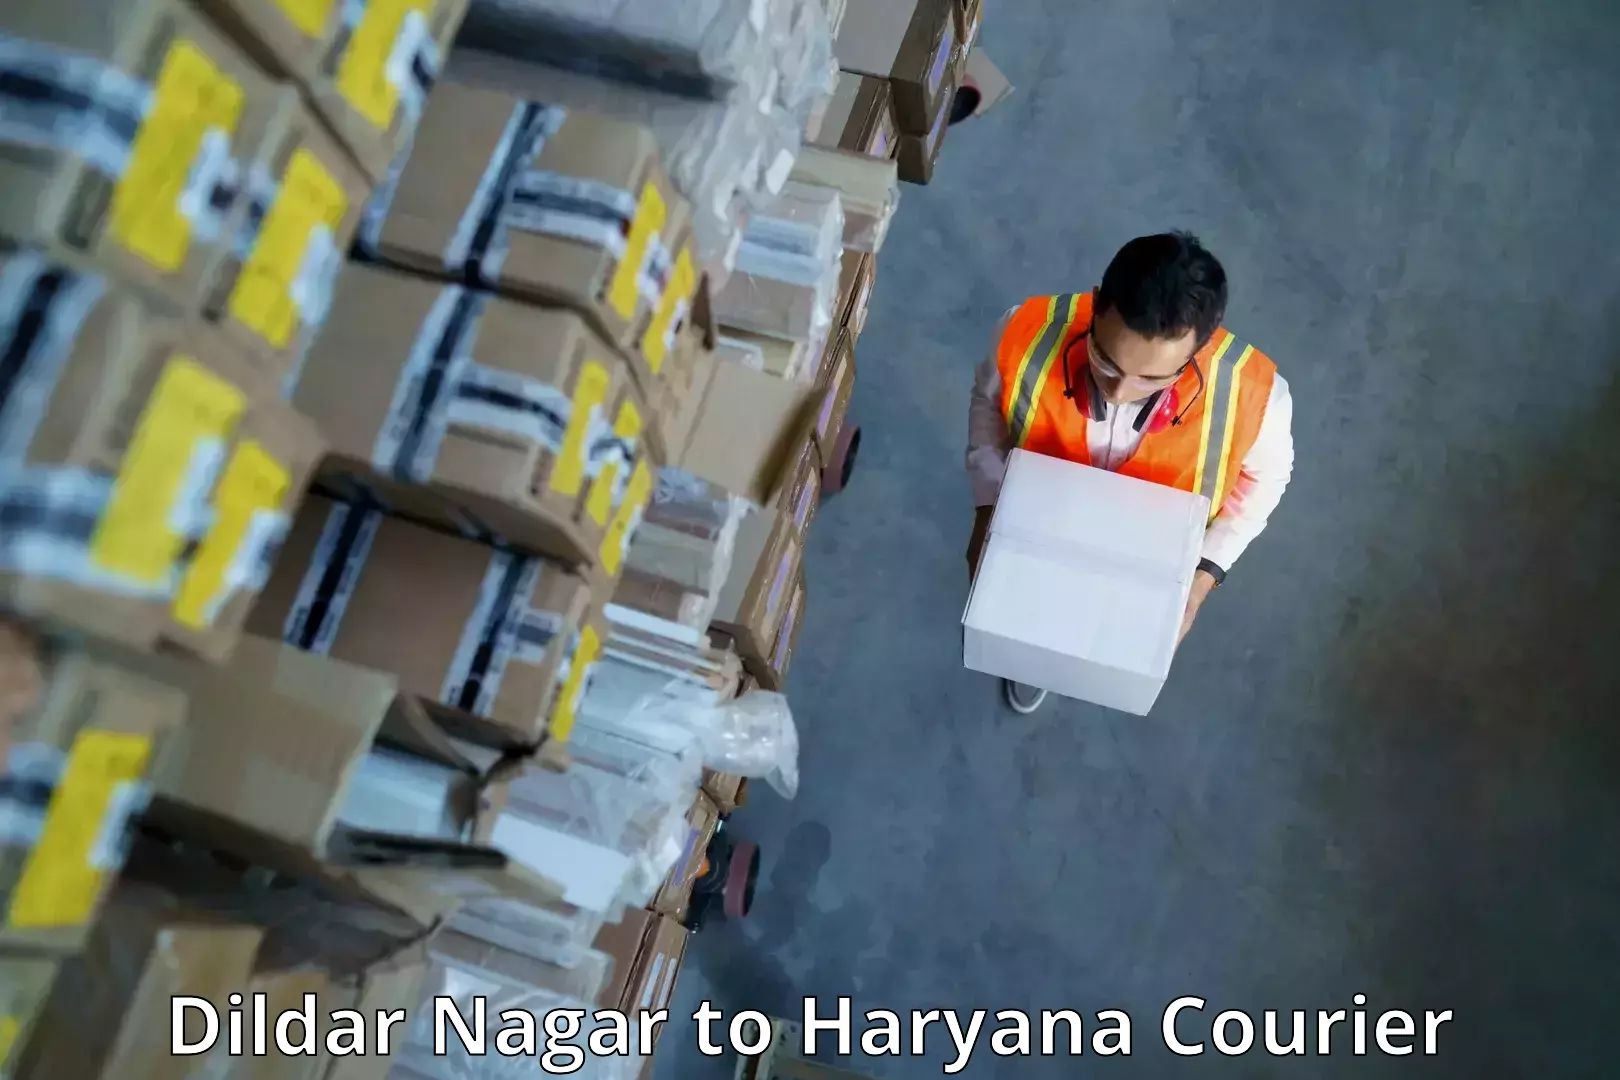 Express courier facilities Dildar Nagar to Chaudhary Charan Singh Haryana Agricultural University Hisar